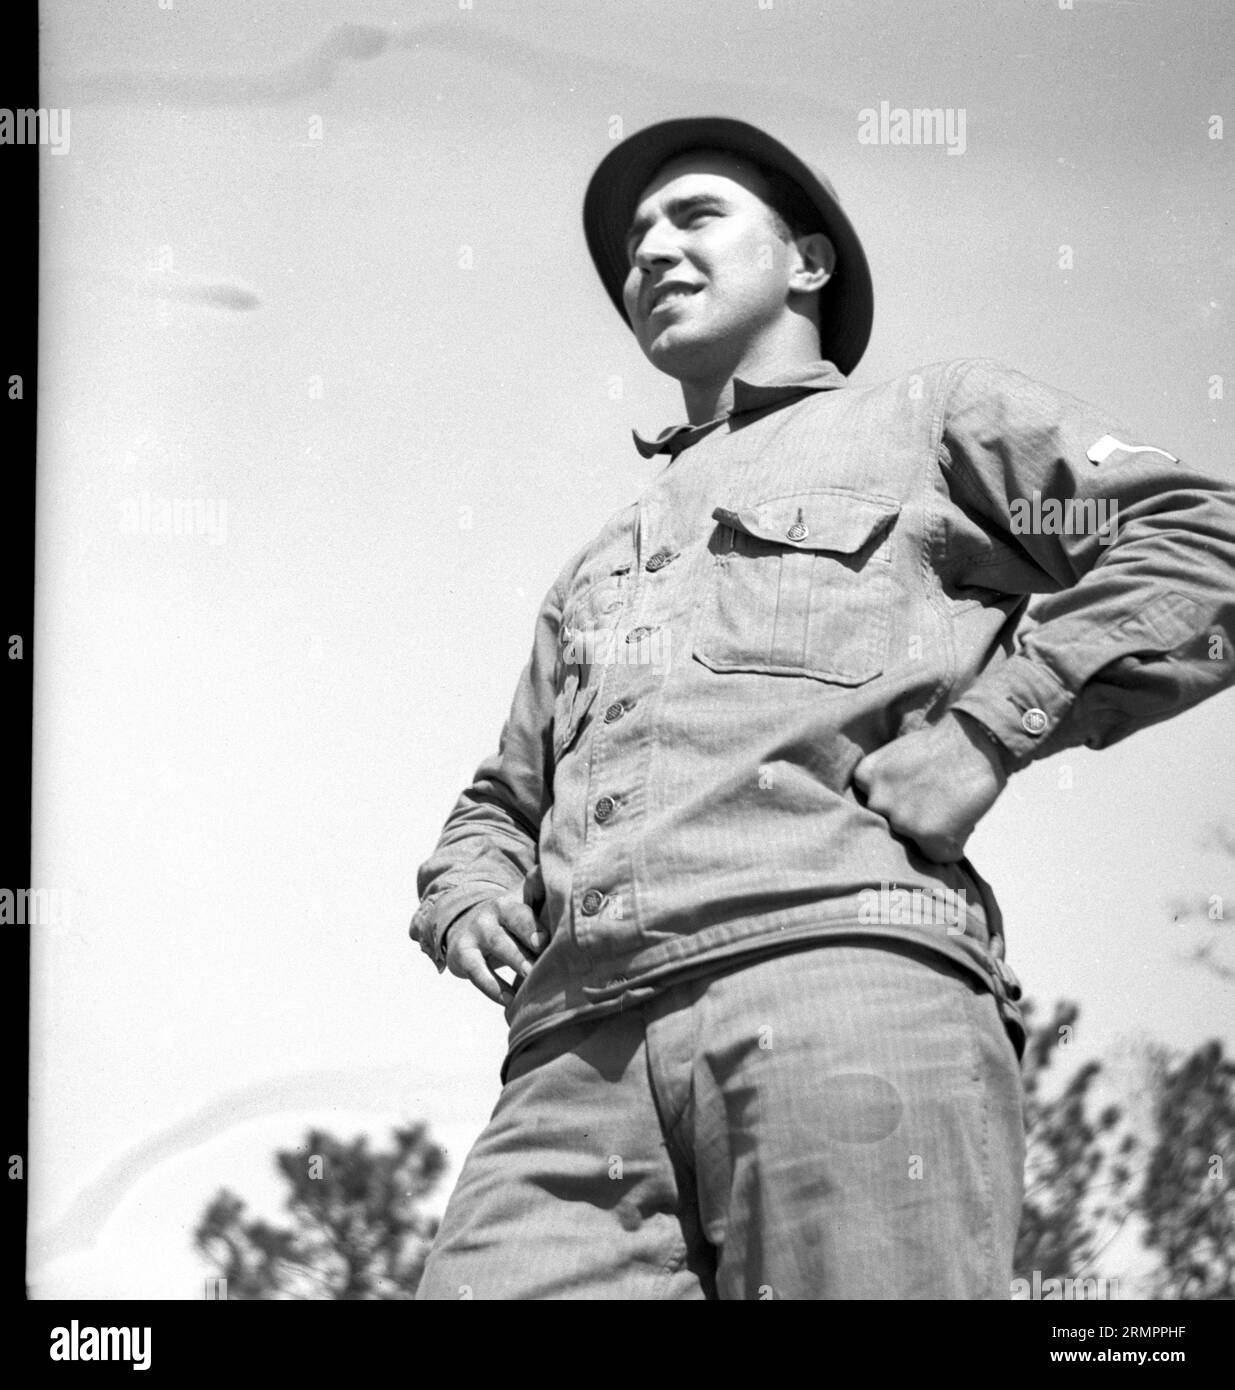 United States GI en uniforme. Les membres de la 114e division d’infanterie de l’armée des États-Unis s’entraînent pour combattre l’Allemagne en Europe pendant la Seconde Guerre mondiale. Banque D'Images